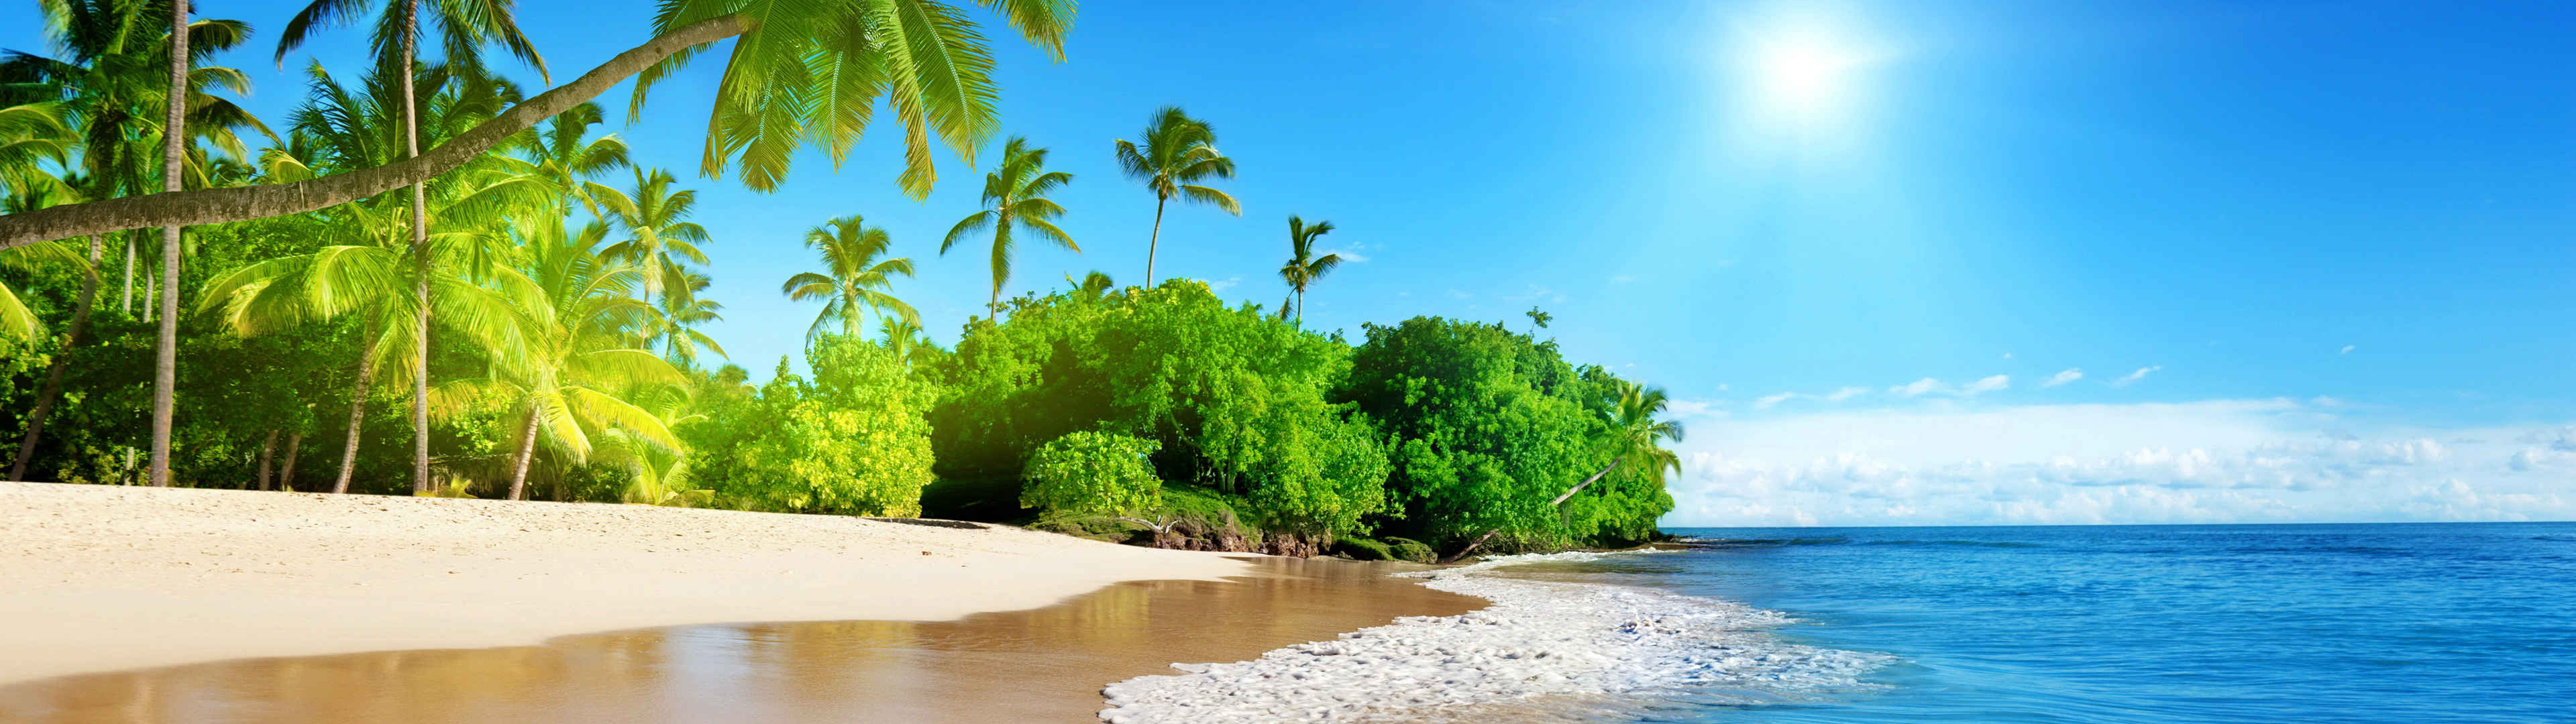 蔚蓝的大海 阳光 棕榈树 海岸 美丽海滩5120x1440风景壁纸